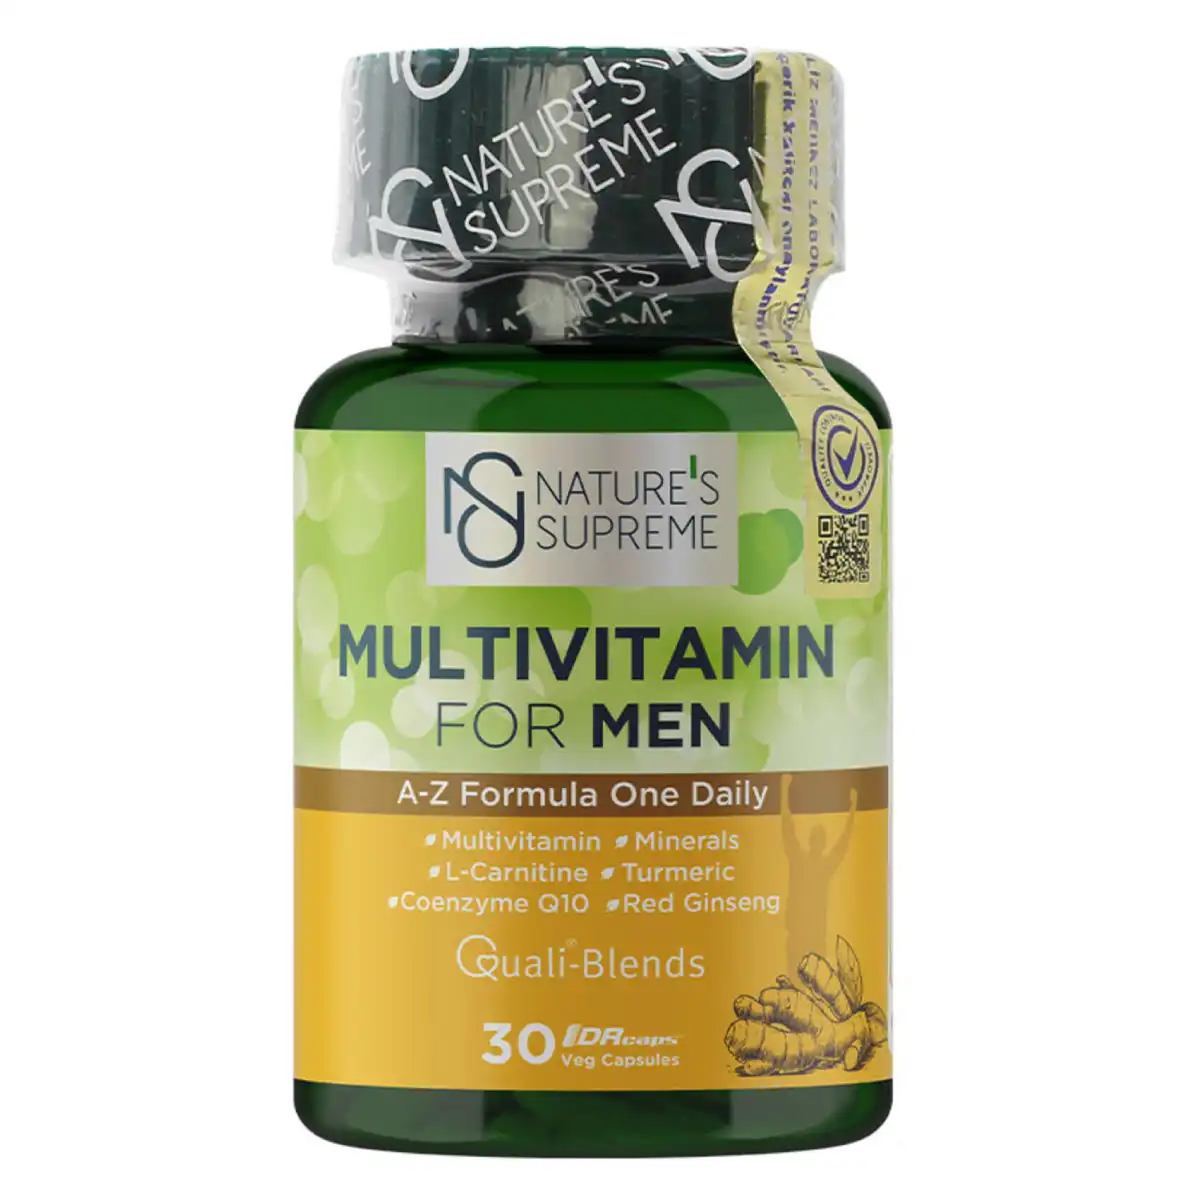 Nature's Supreme Multivitamin For Men